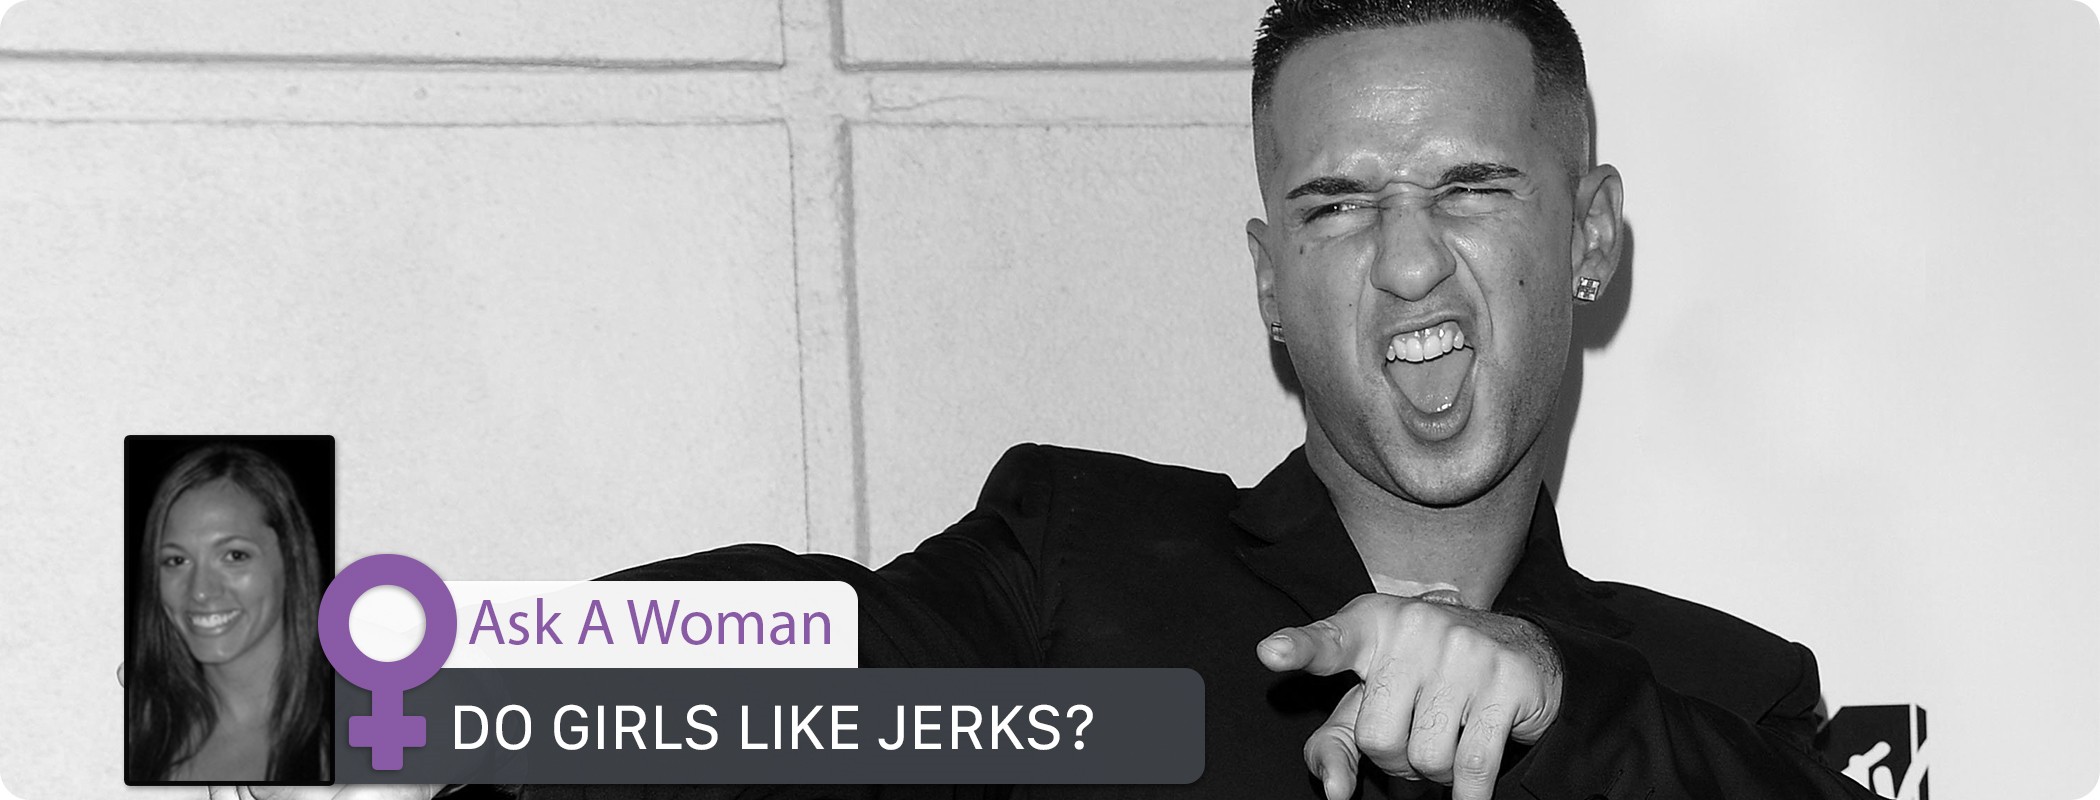 Ask a Woman - Do Girls Like Jerks?